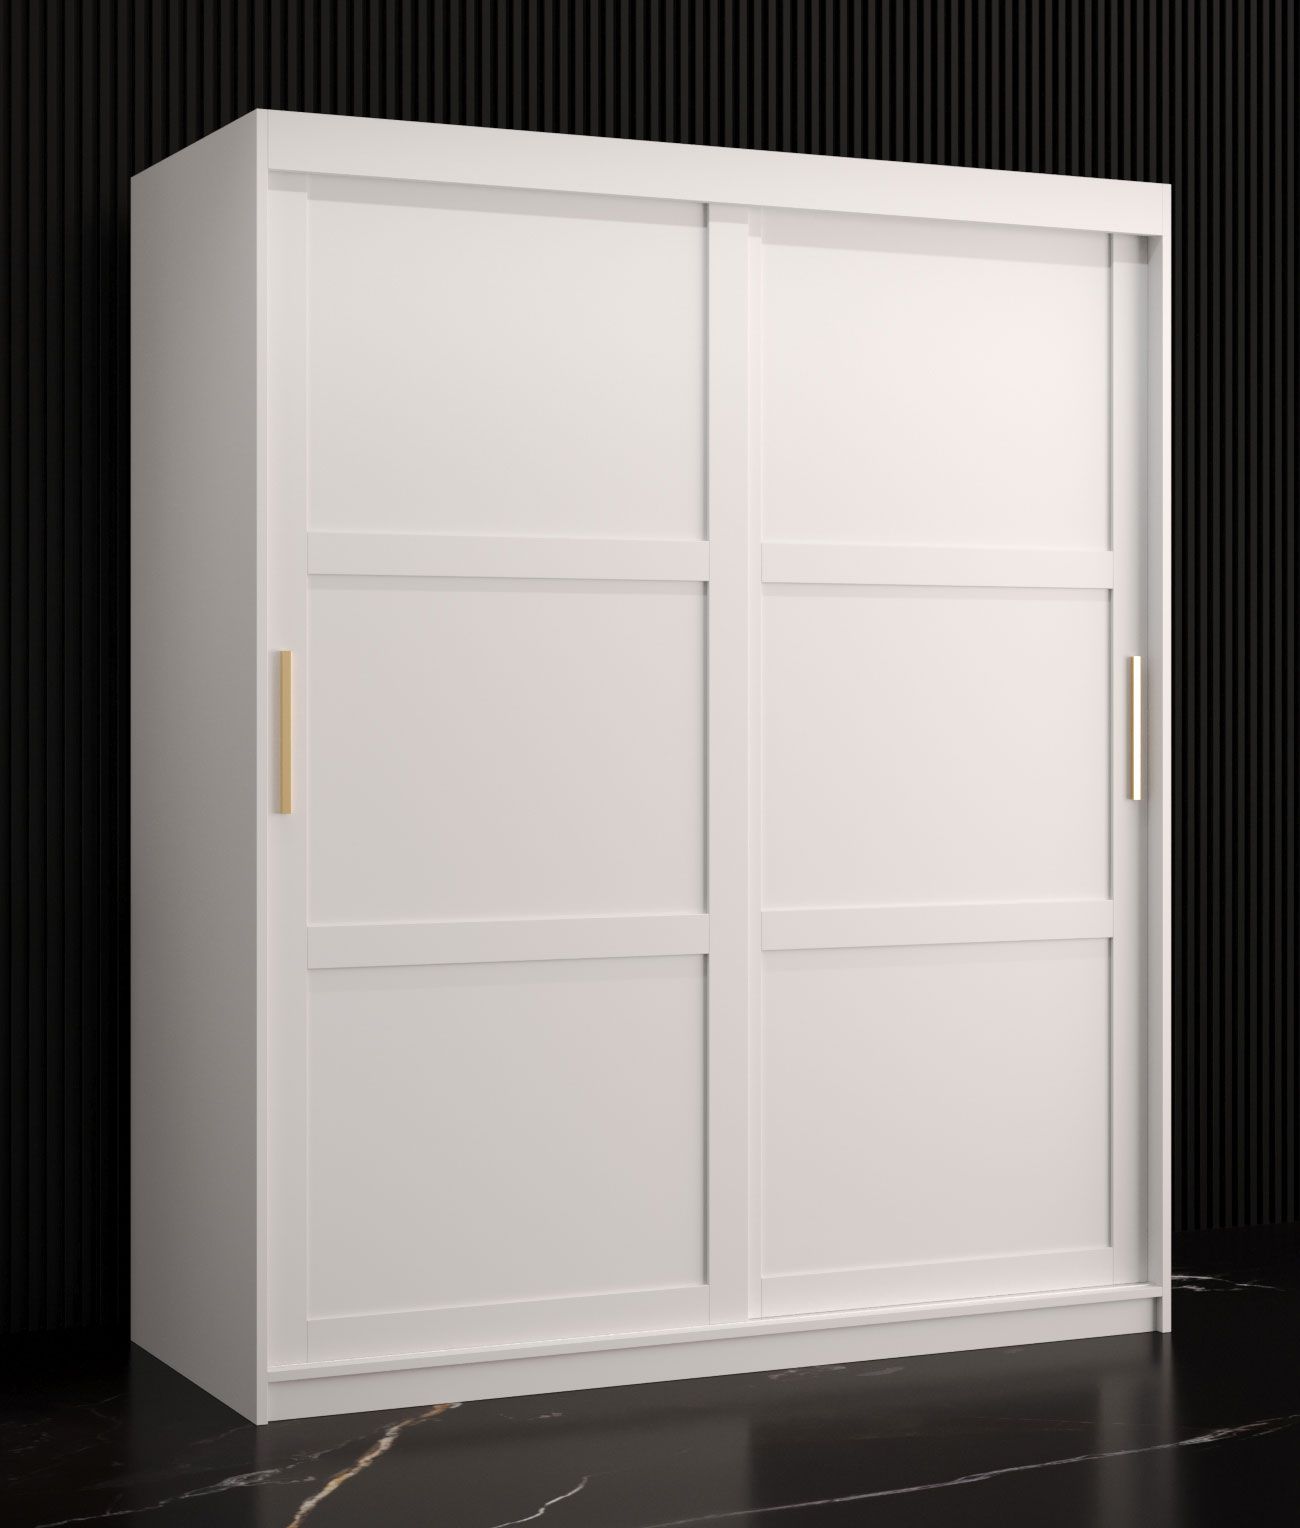 Eenvoudige kledingkast met vijf vakken Liskamm 09, kleur: mat wit - afmetingen: 200 x 150 x 62 cm (H x B x D), met voldoende opbergruimte